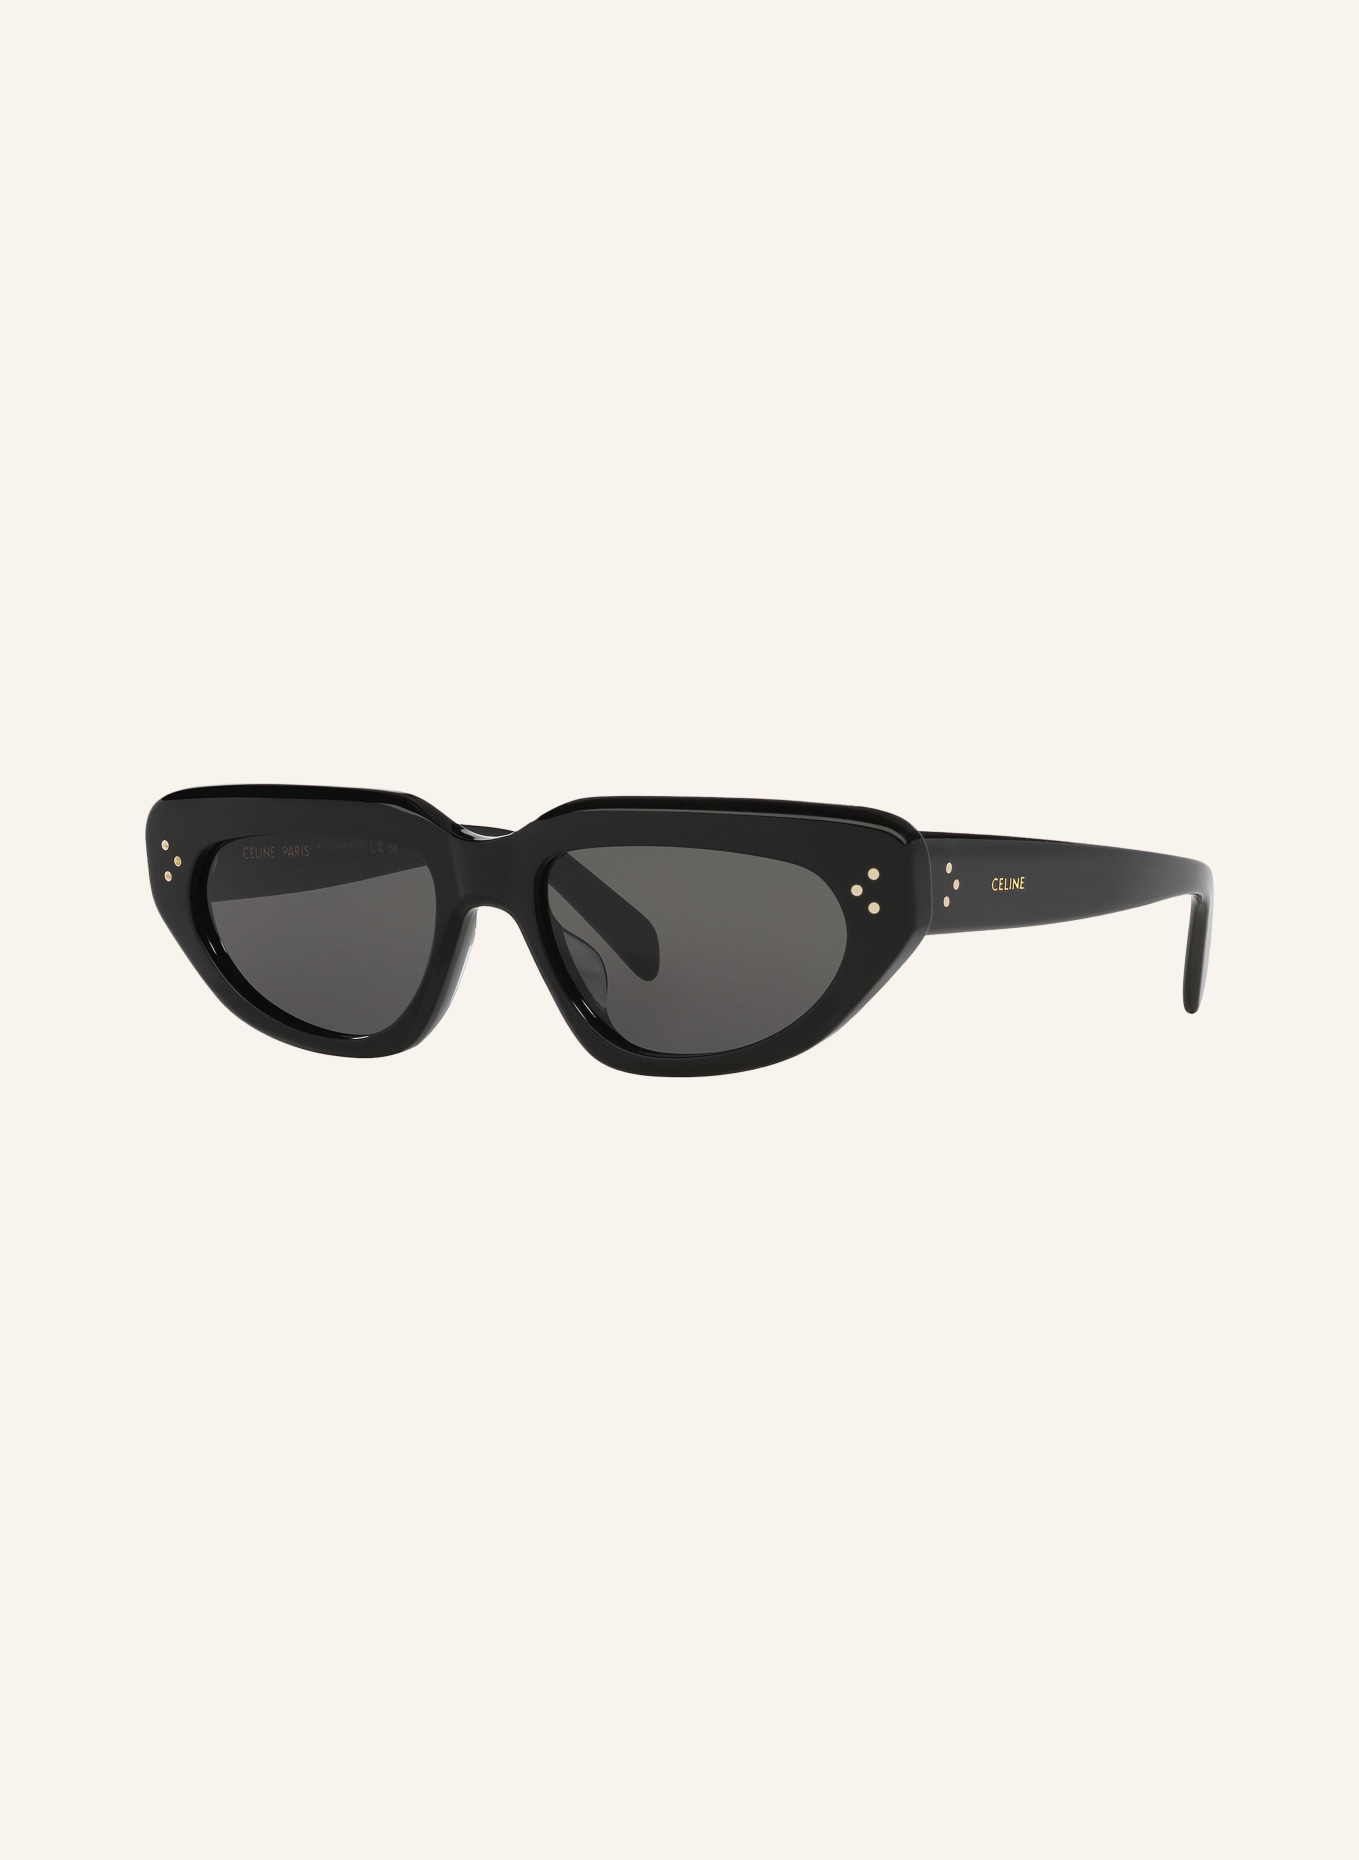 CELINE Sunglasses CL000433 BOLD 3 DOTS, Color: 1100L1 - BLACK/ GRAY (Image 1)